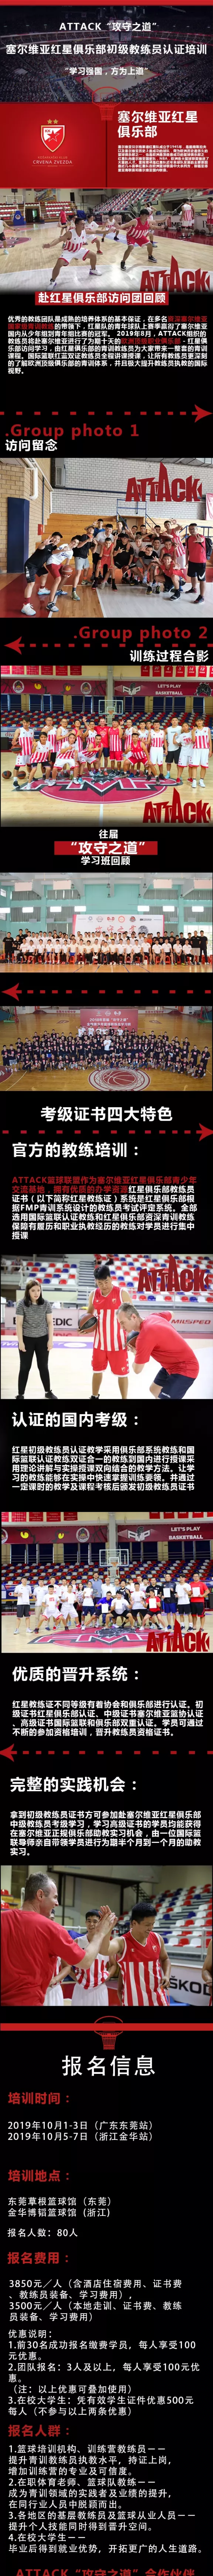 2019塞尔维亚红星篮球俱乐部初级教练员认证培训10月浙江金华站